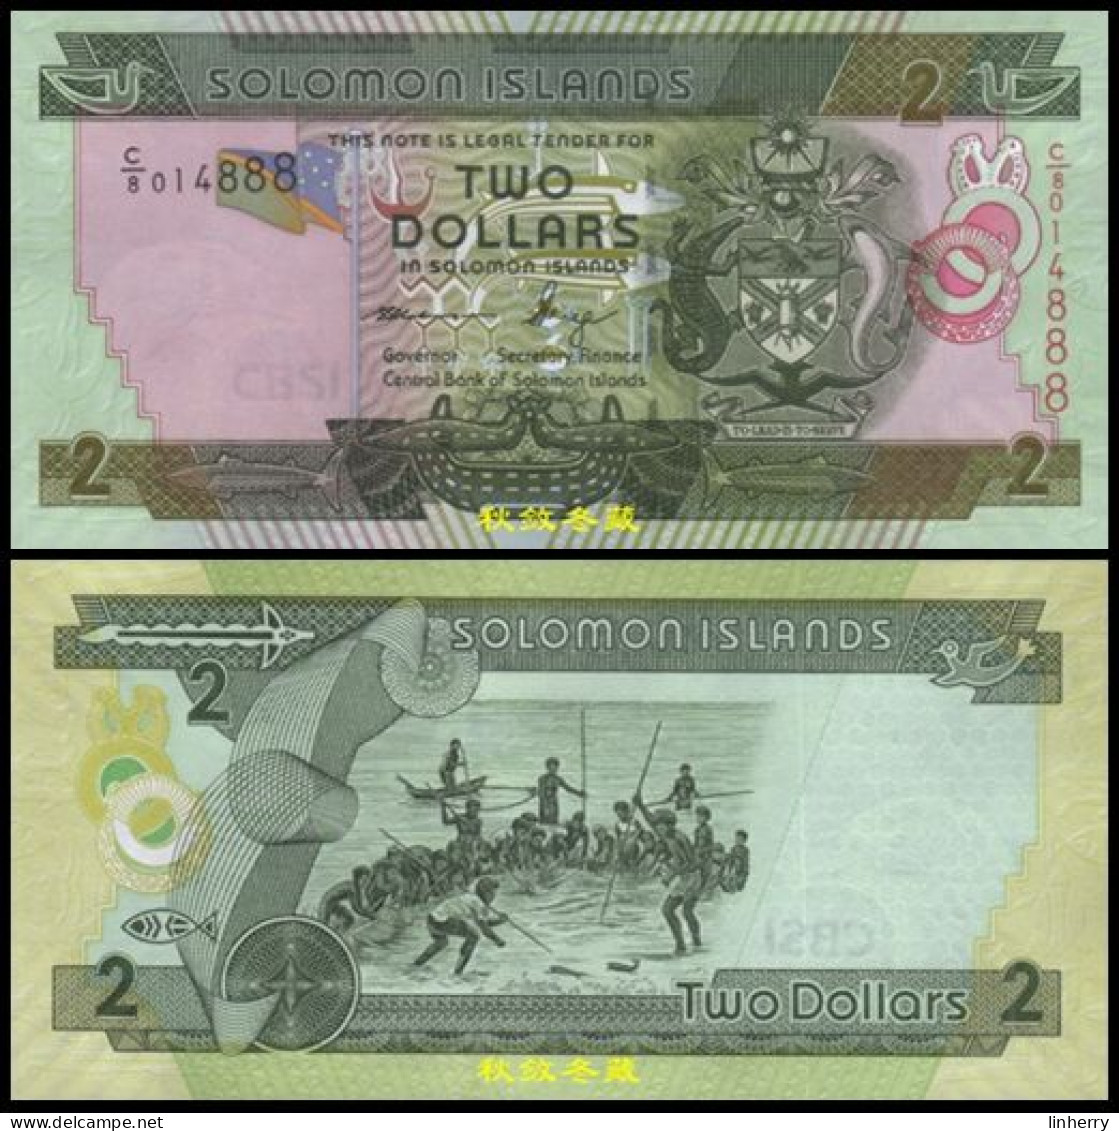 Solomon Islands 2 Dollars 2011, Paper, Lucky Number 888, UNC - Solomonen